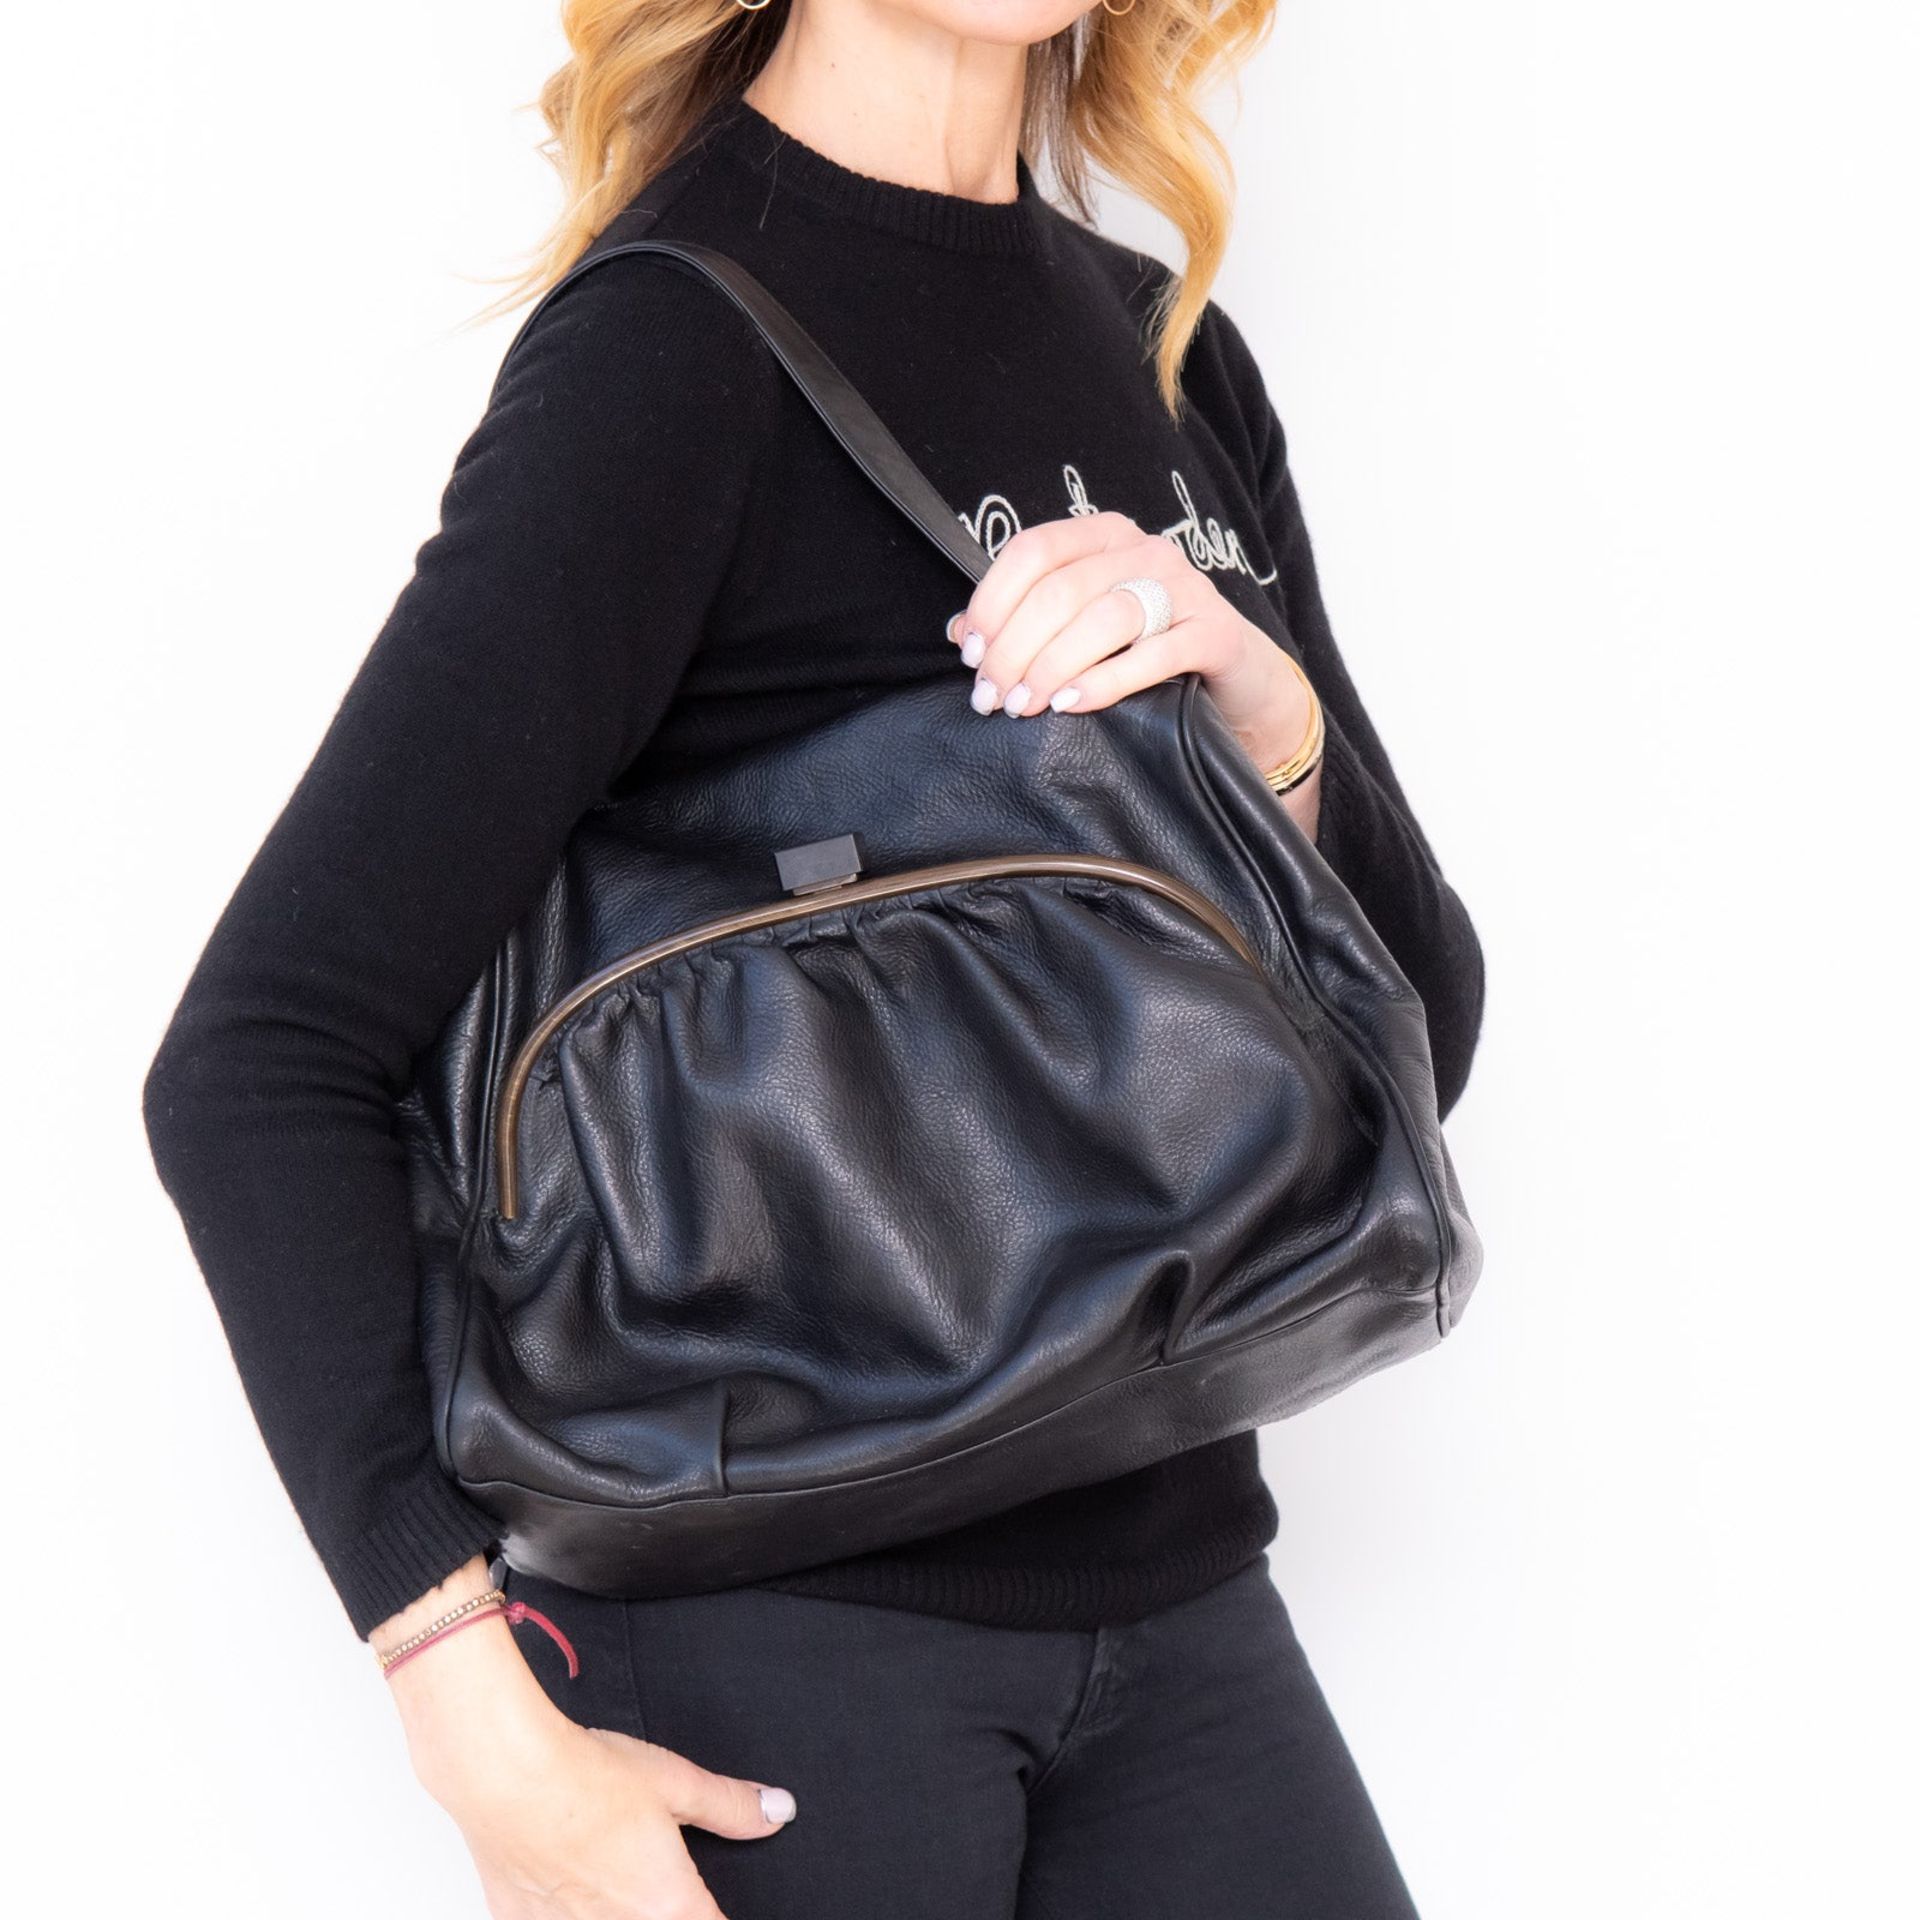 Erva Black Leather Bag - Image 2 of 7